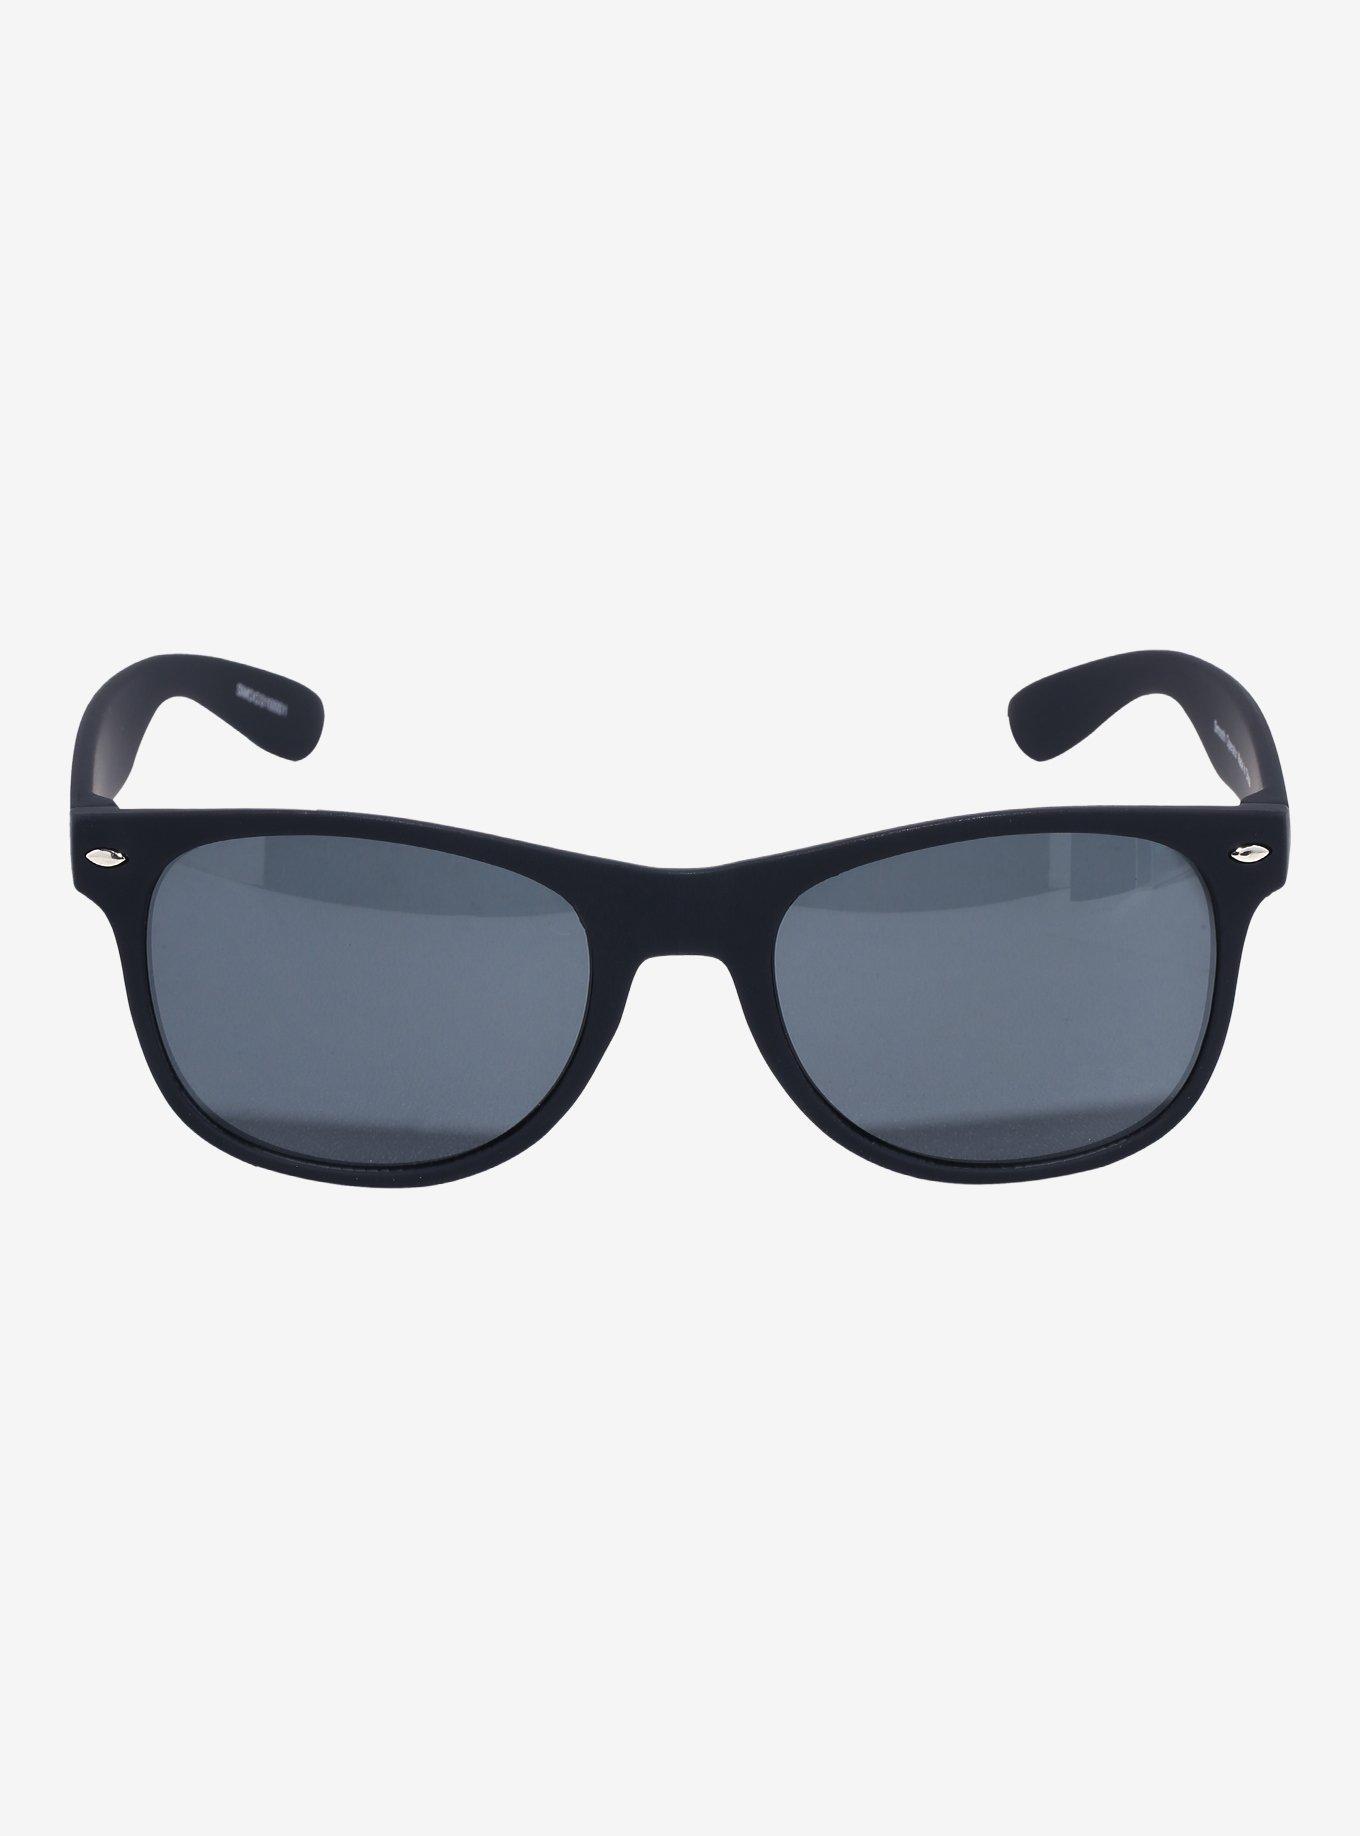 Black Matte Square Sunglasses